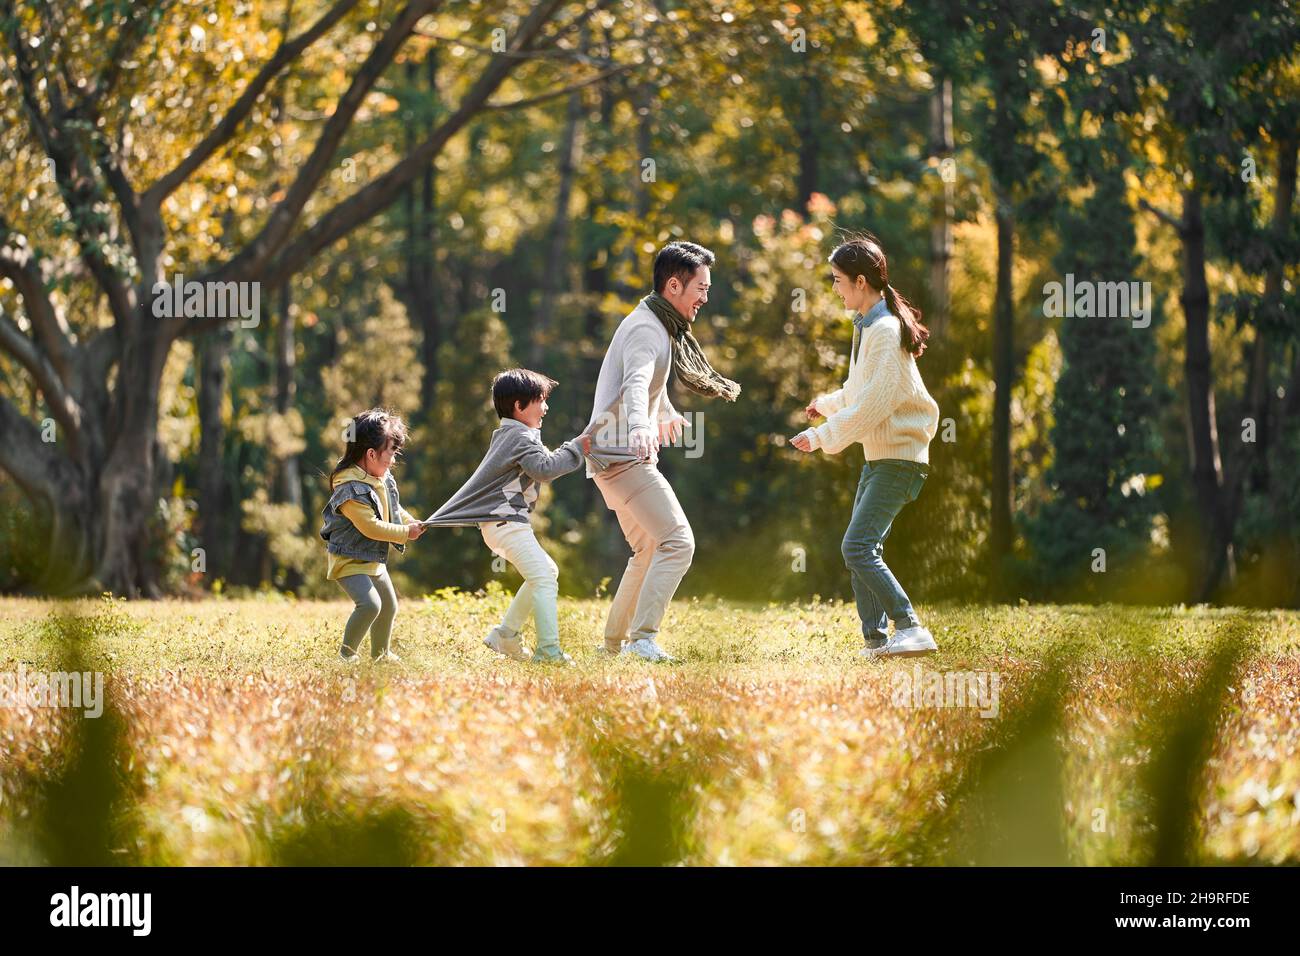 Junge asiatische Familie mit zwei Kindern, die Spaß beim Spielen im Freien im Park haben Stockfoto